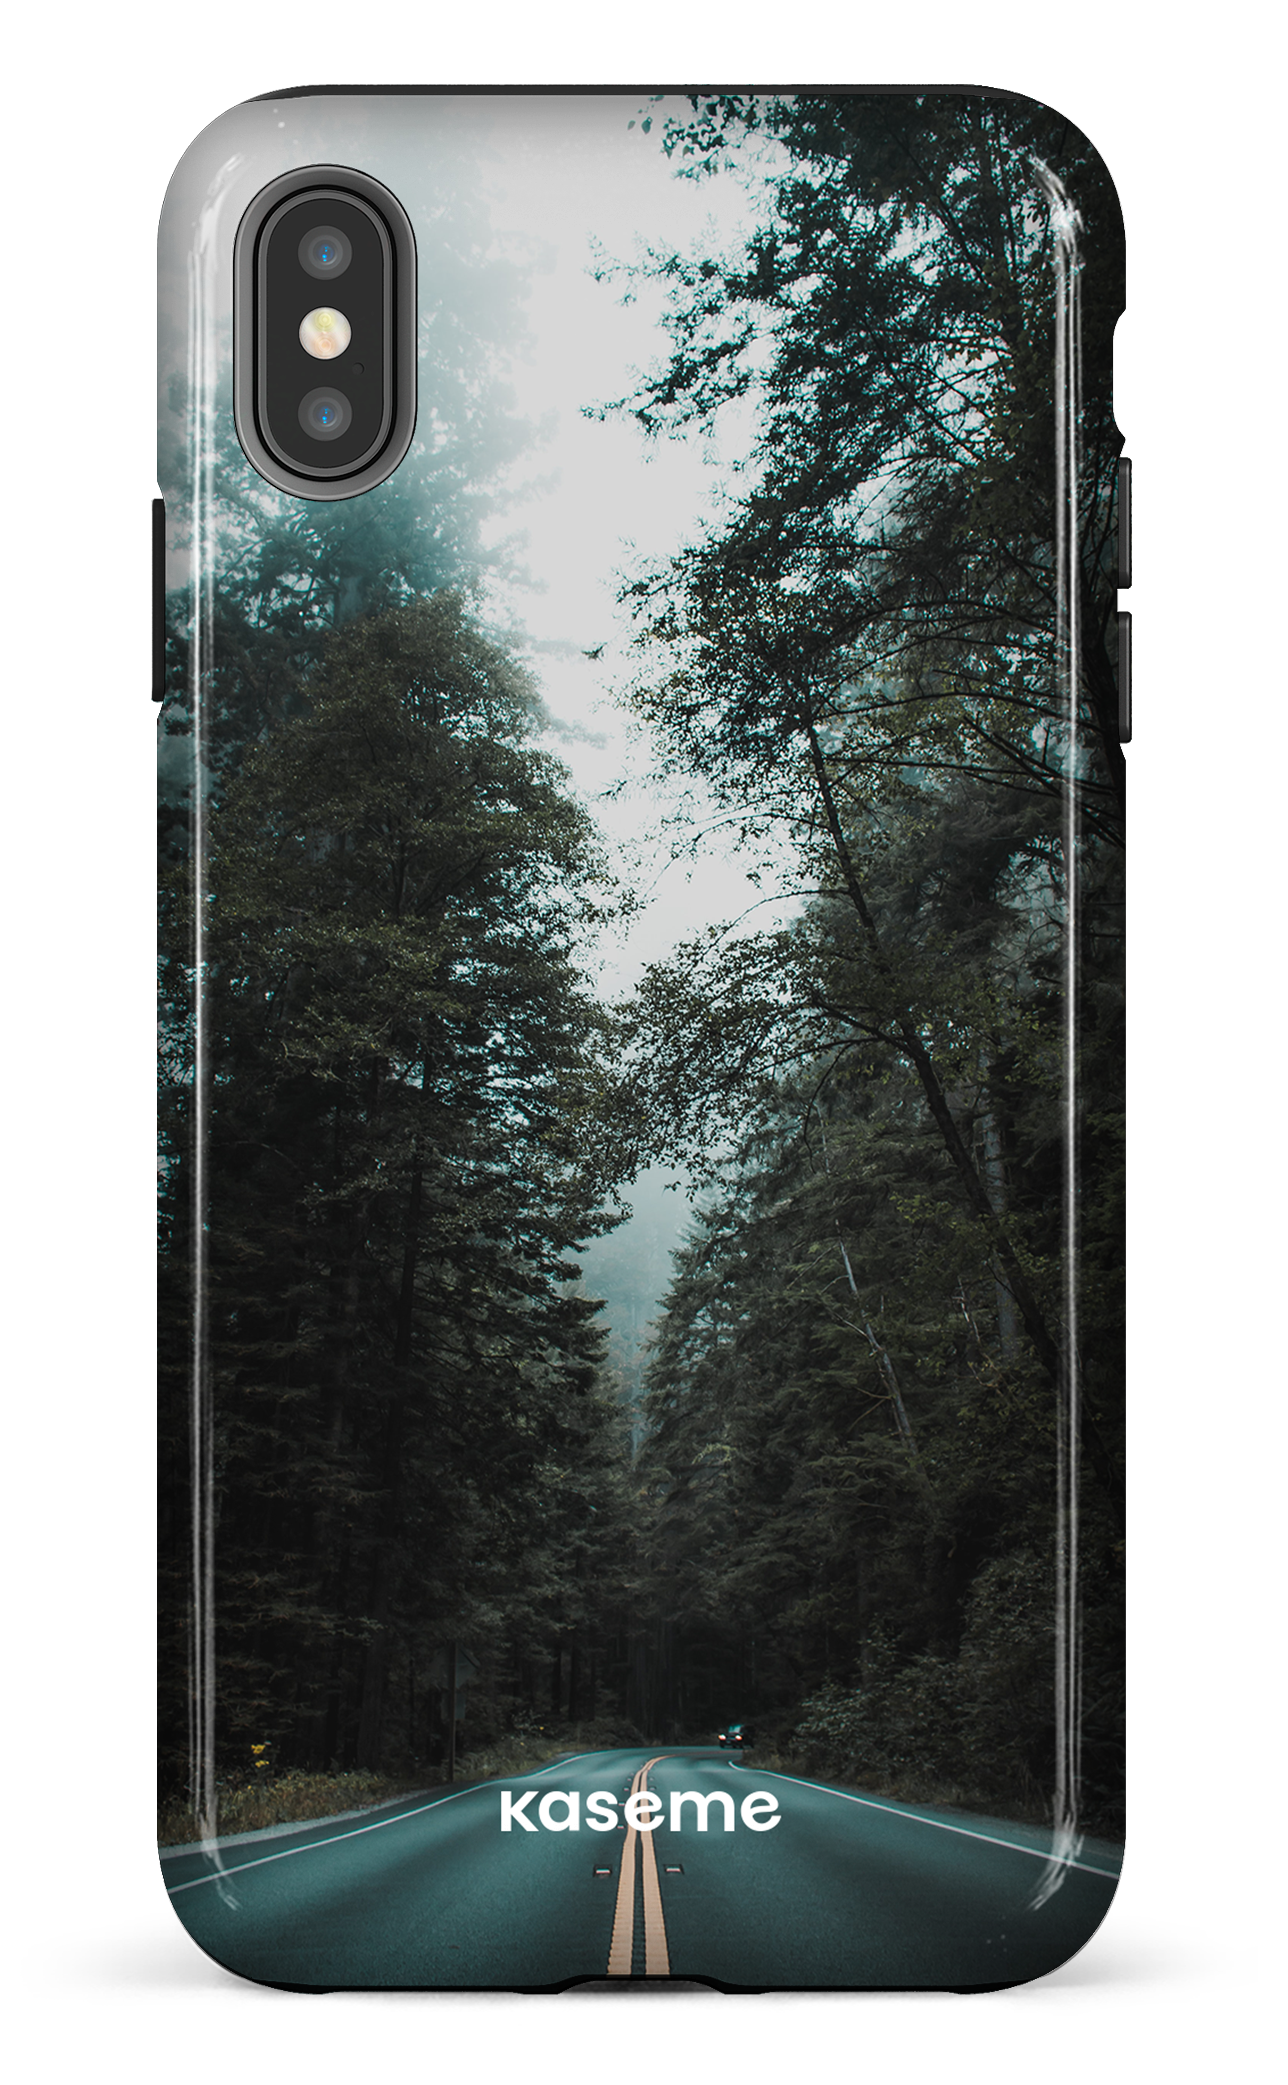 Sequoia - iPhone XS Max